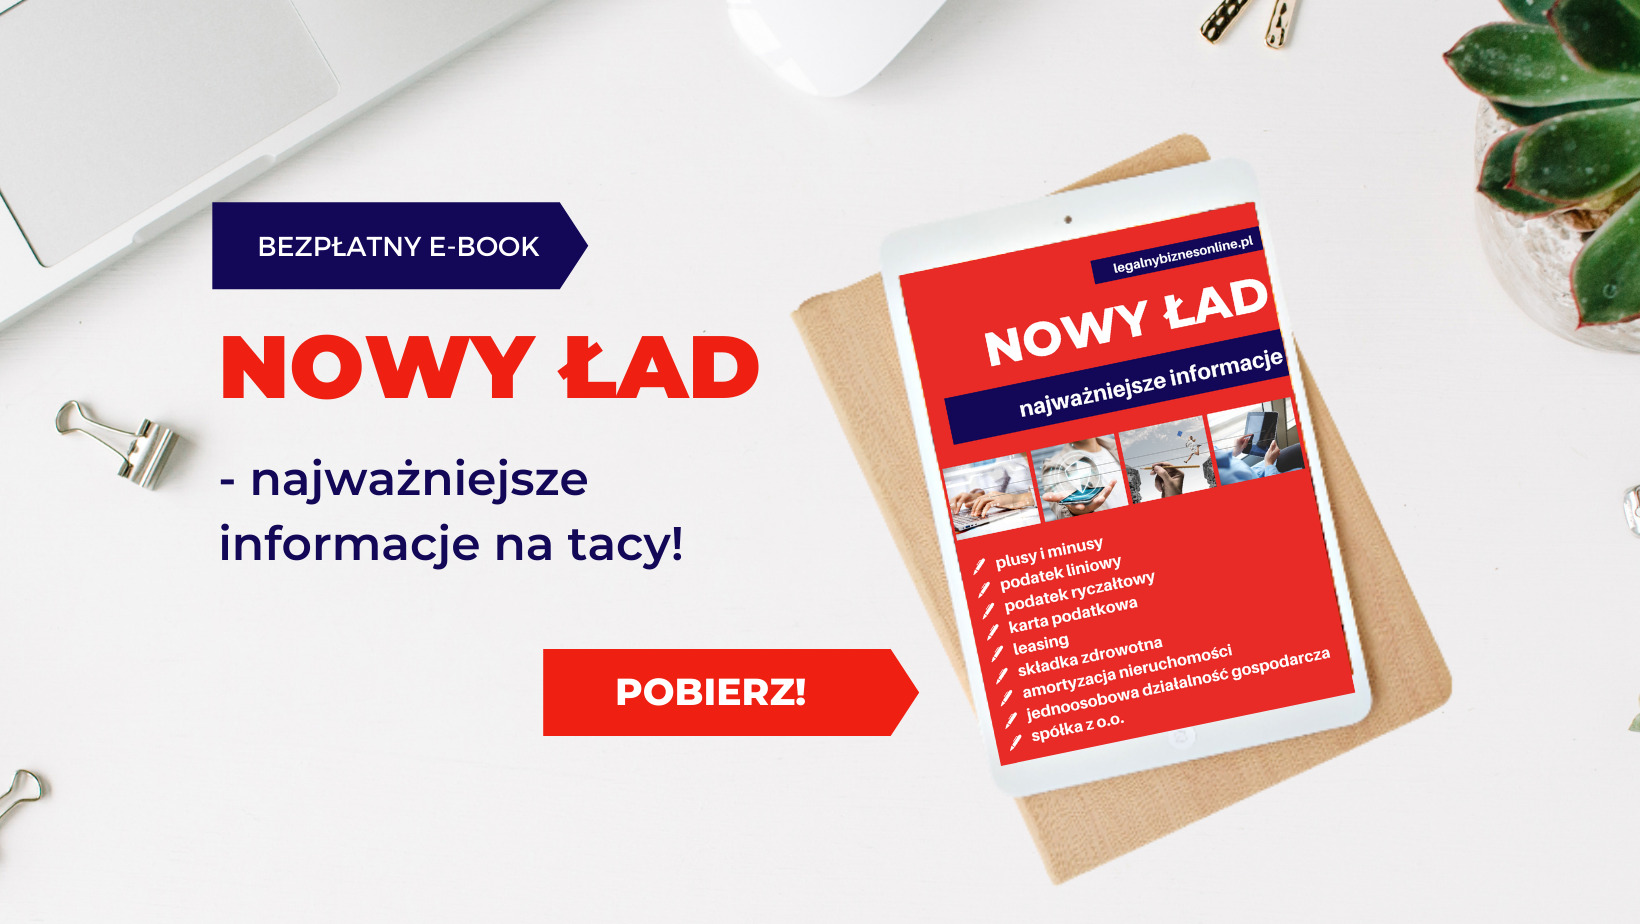 Nowy Ład - najważniejsze informacje. Bezpłatny e-book autorstwa Ilony Przetacznik.